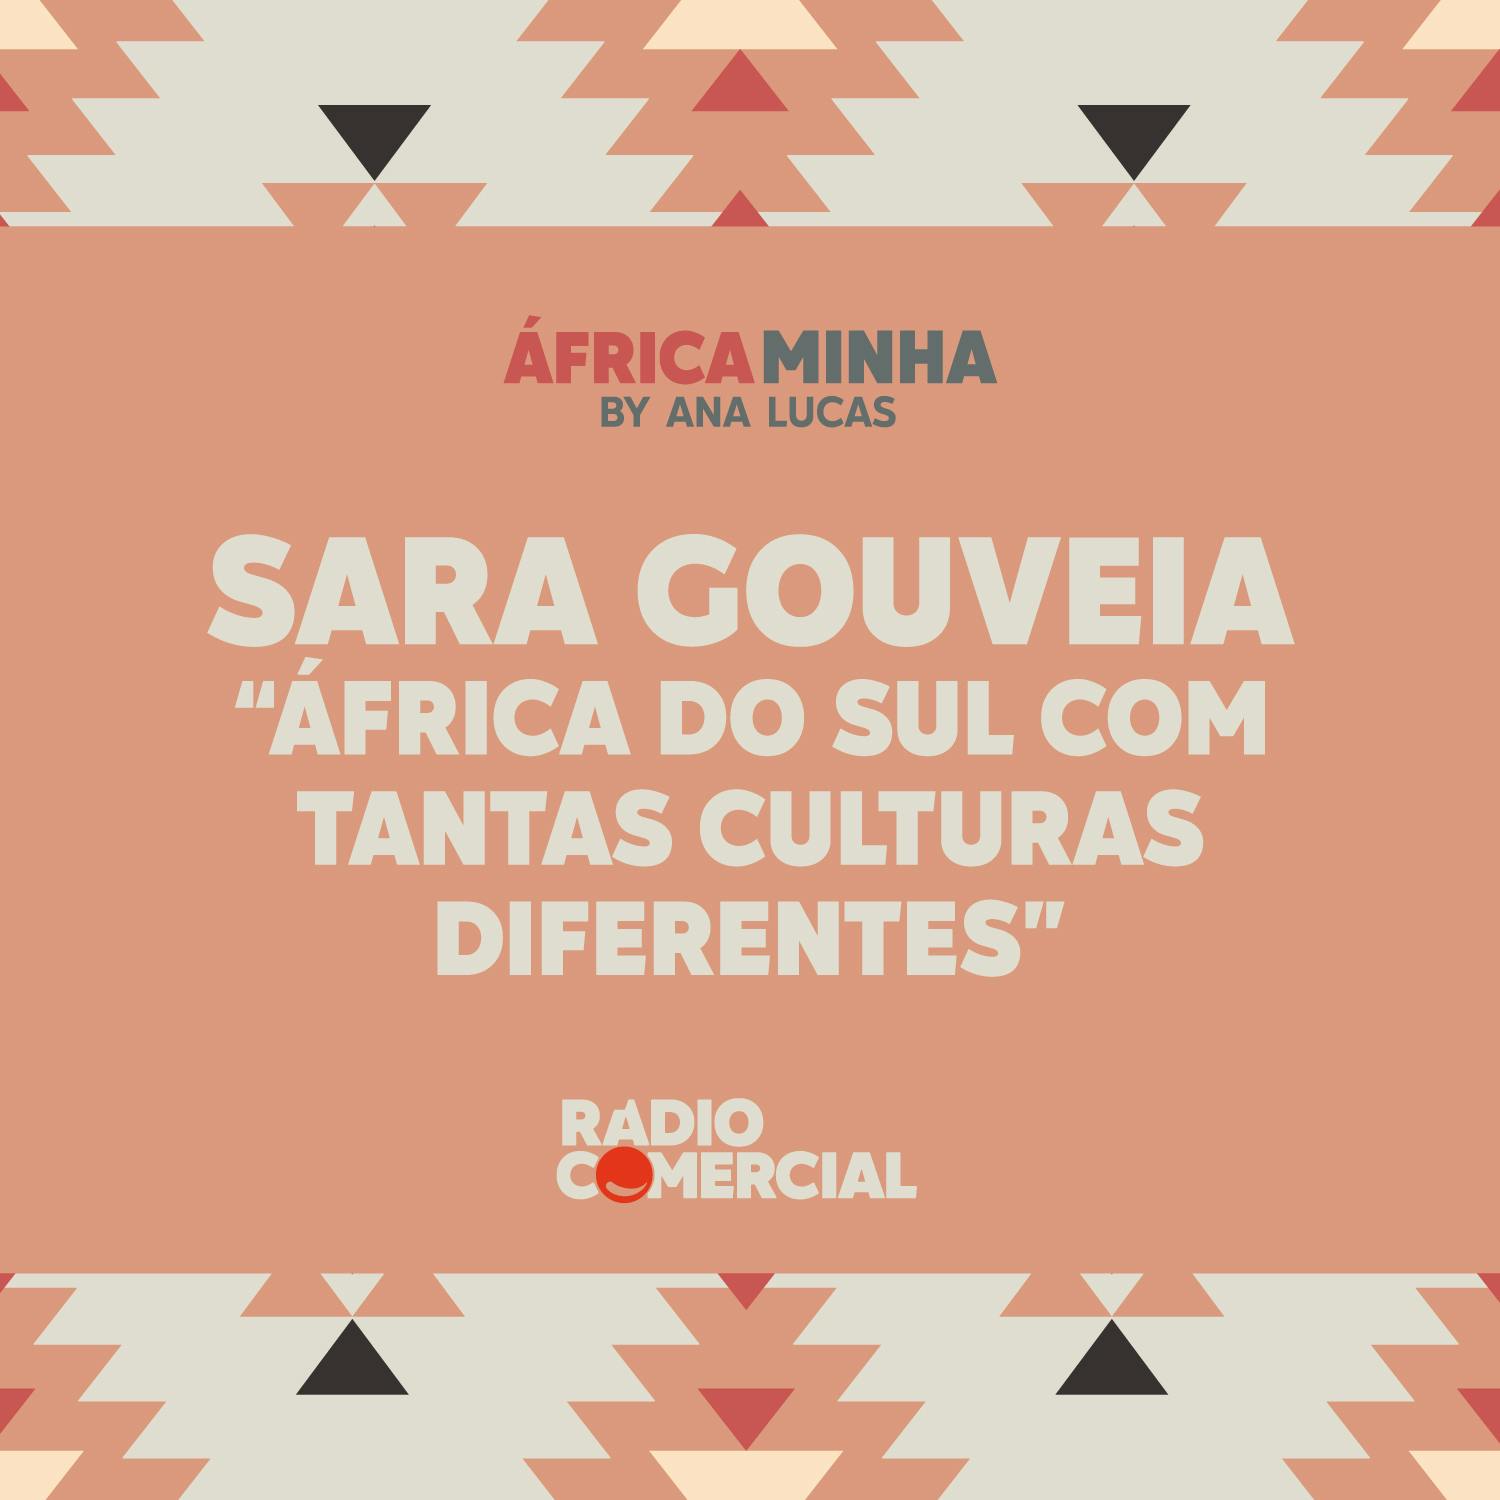 Sara Gouveia "África do Sul com tantas culturas diferentes"